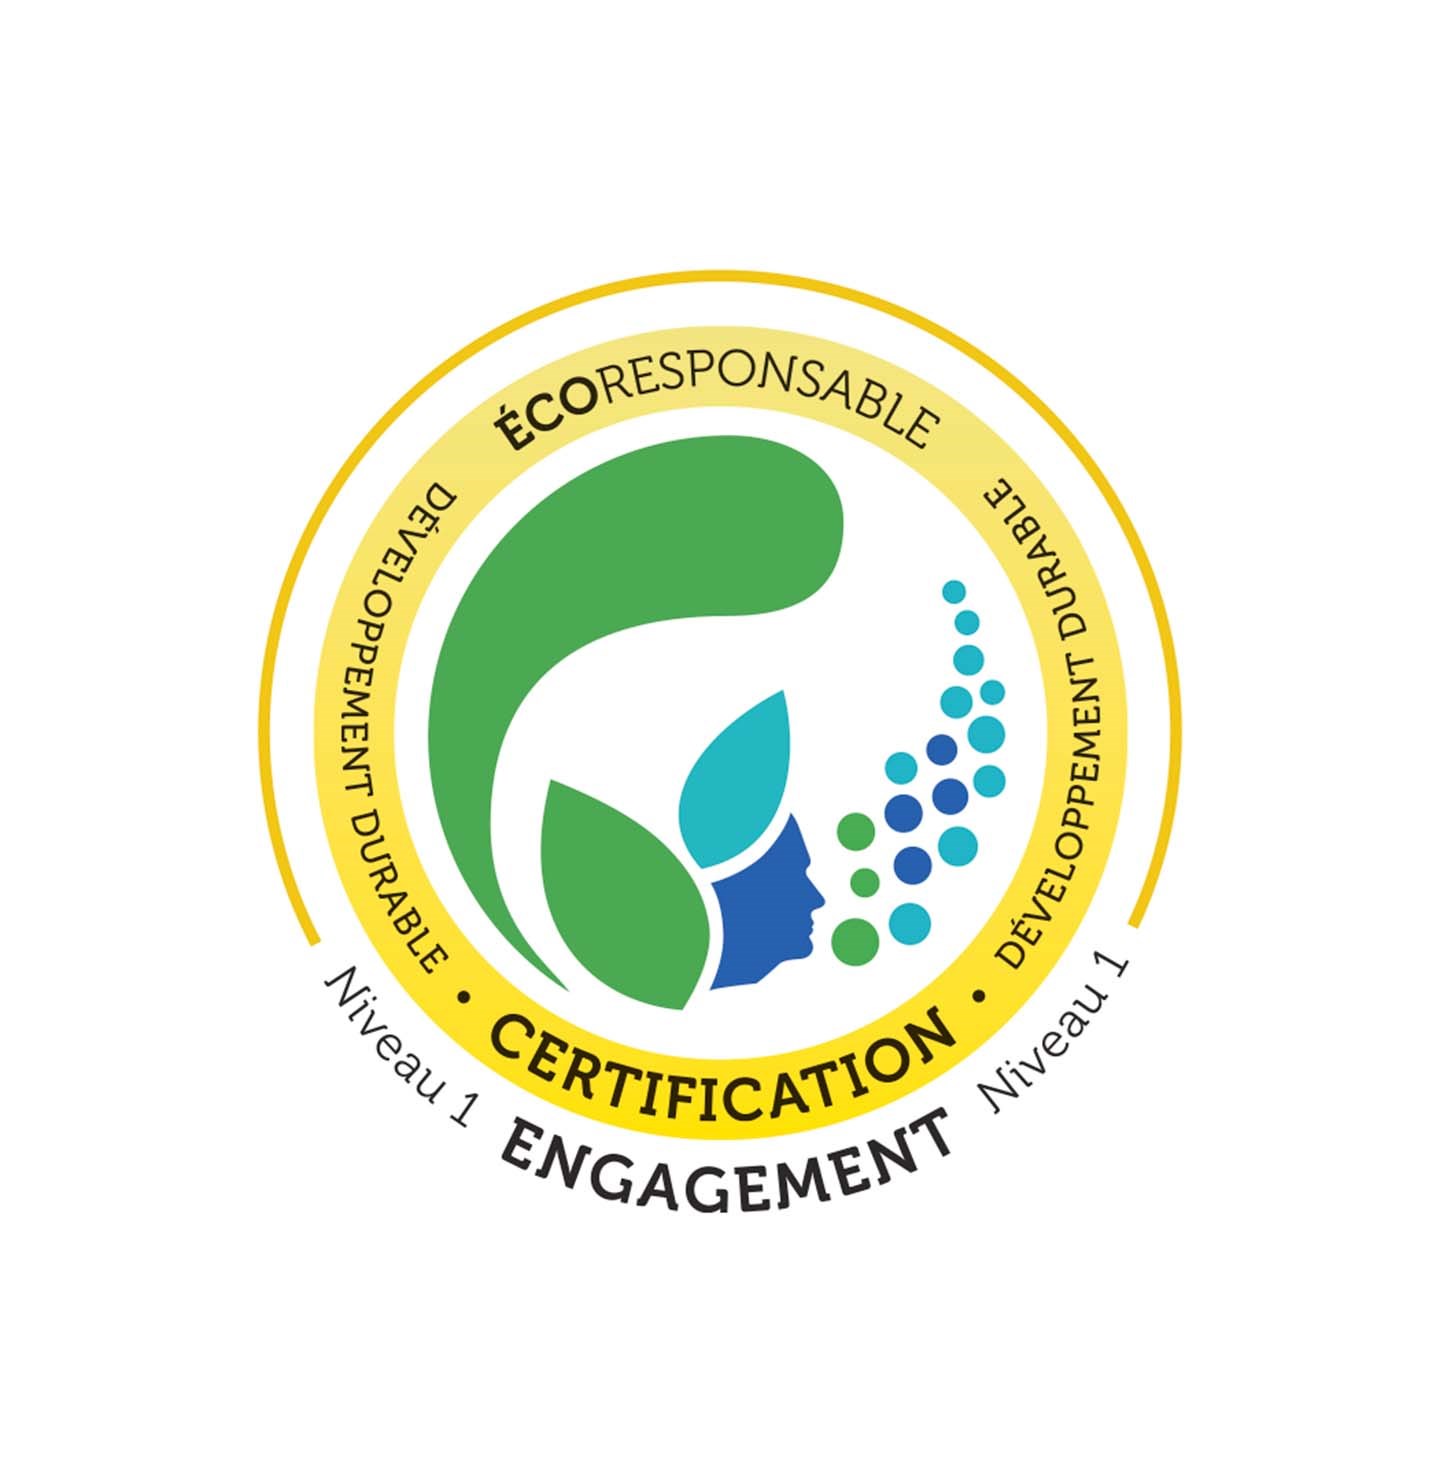 Logo de certification écoresponsable de niveau 1 - Simplex, votre partenaire engagé dans des pratiques durables et respectueuses de l'environnement.